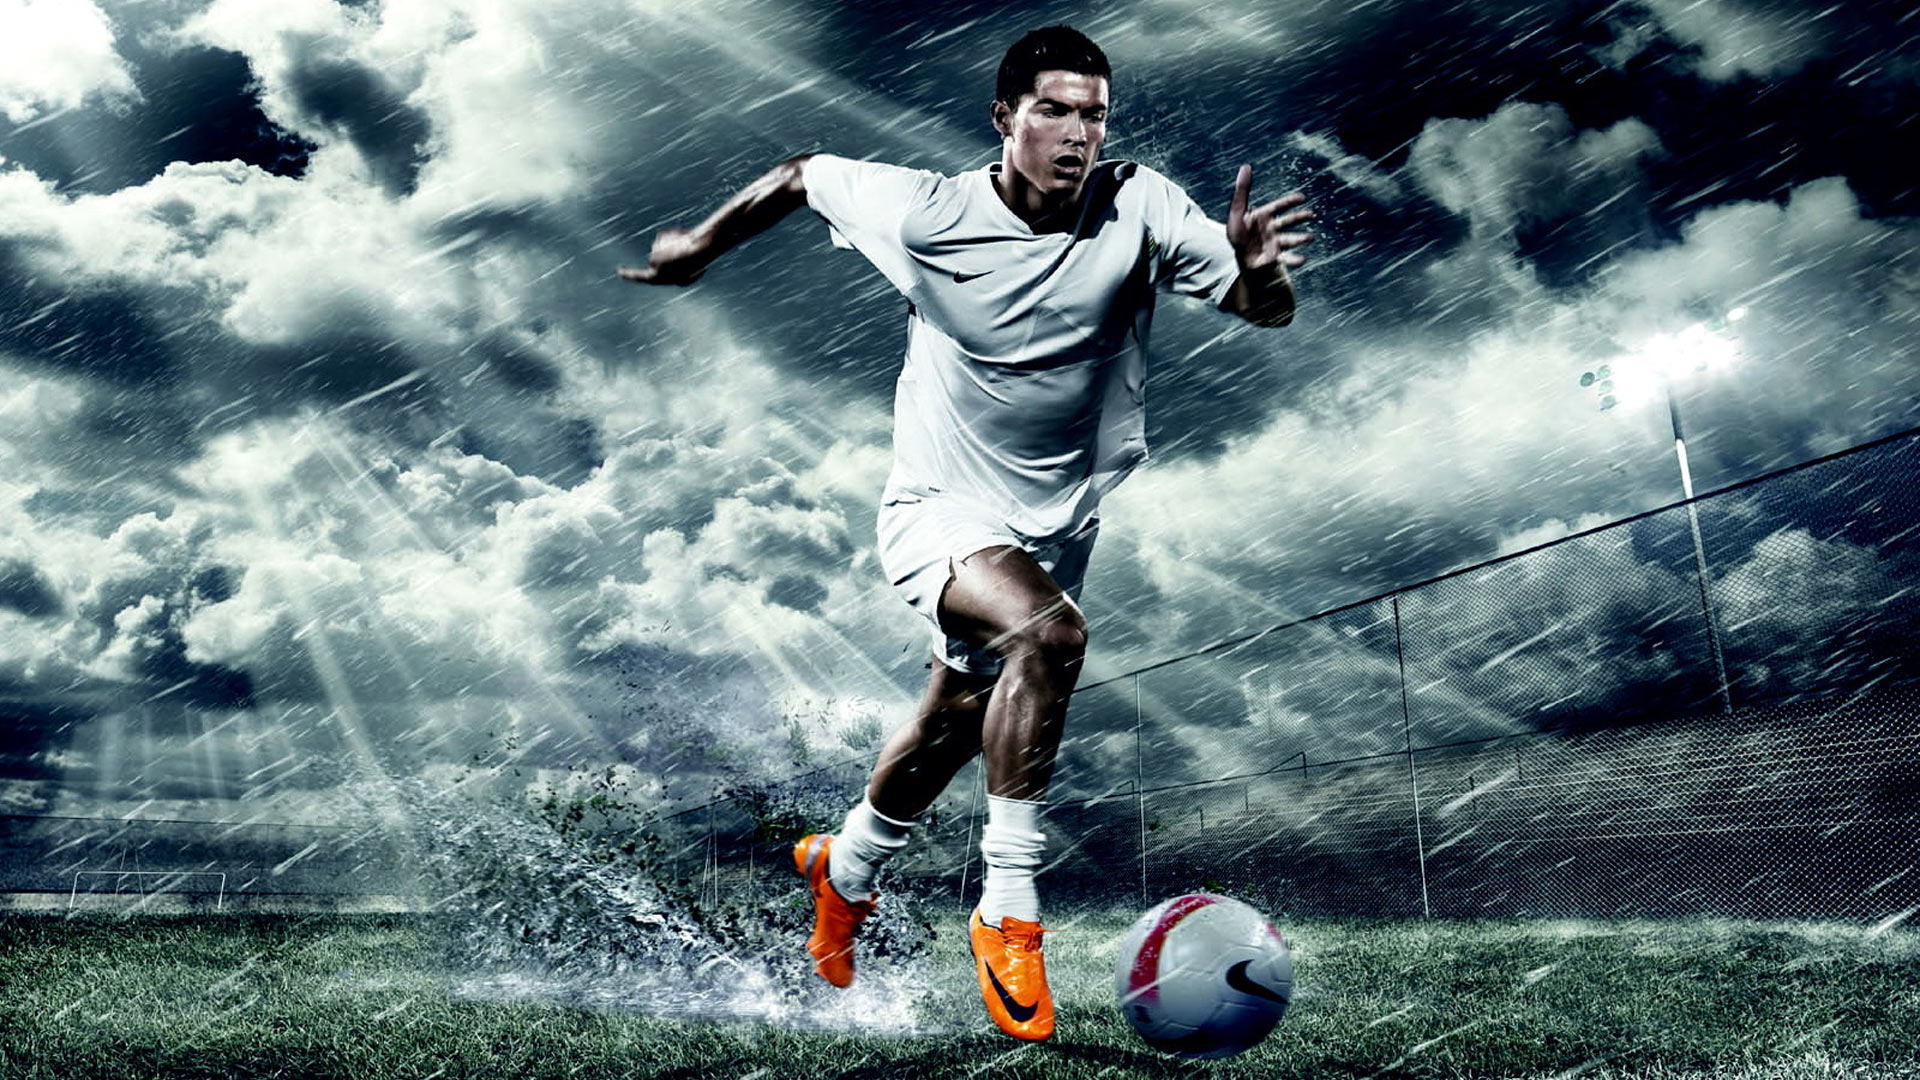 cr7 hd壁紙1080p,サッカー選手,サッカー選手,フットボール,サッカー,サッカーボール